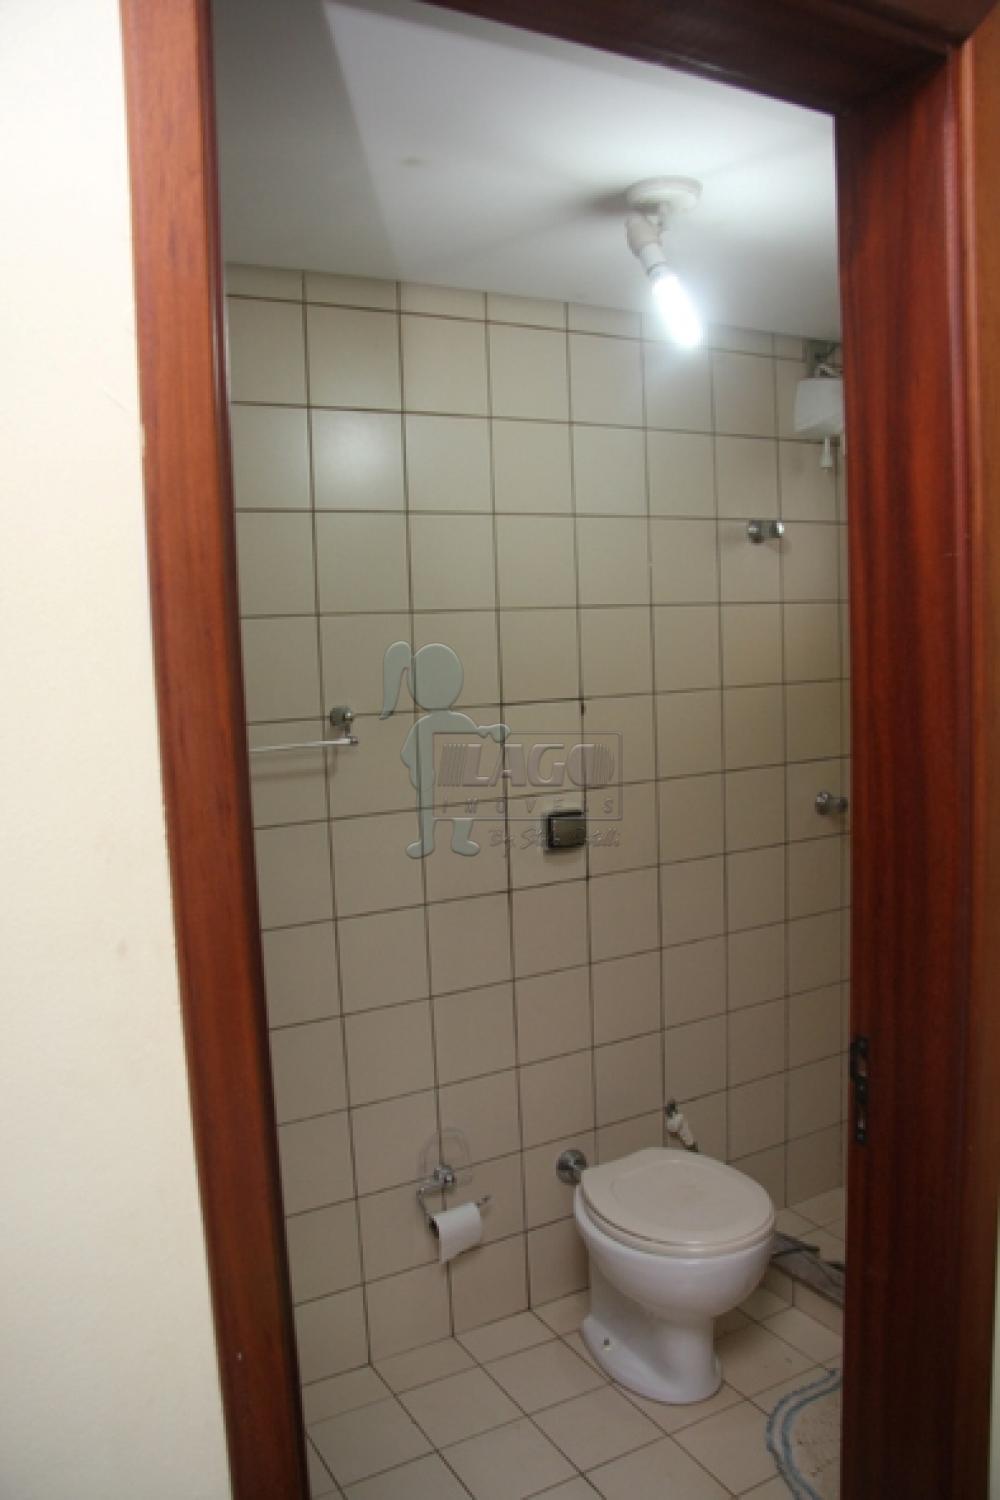 Comprar Apartamentos / Padrão em Ribeirão Preto R$ 330.000,00 - Foto 3